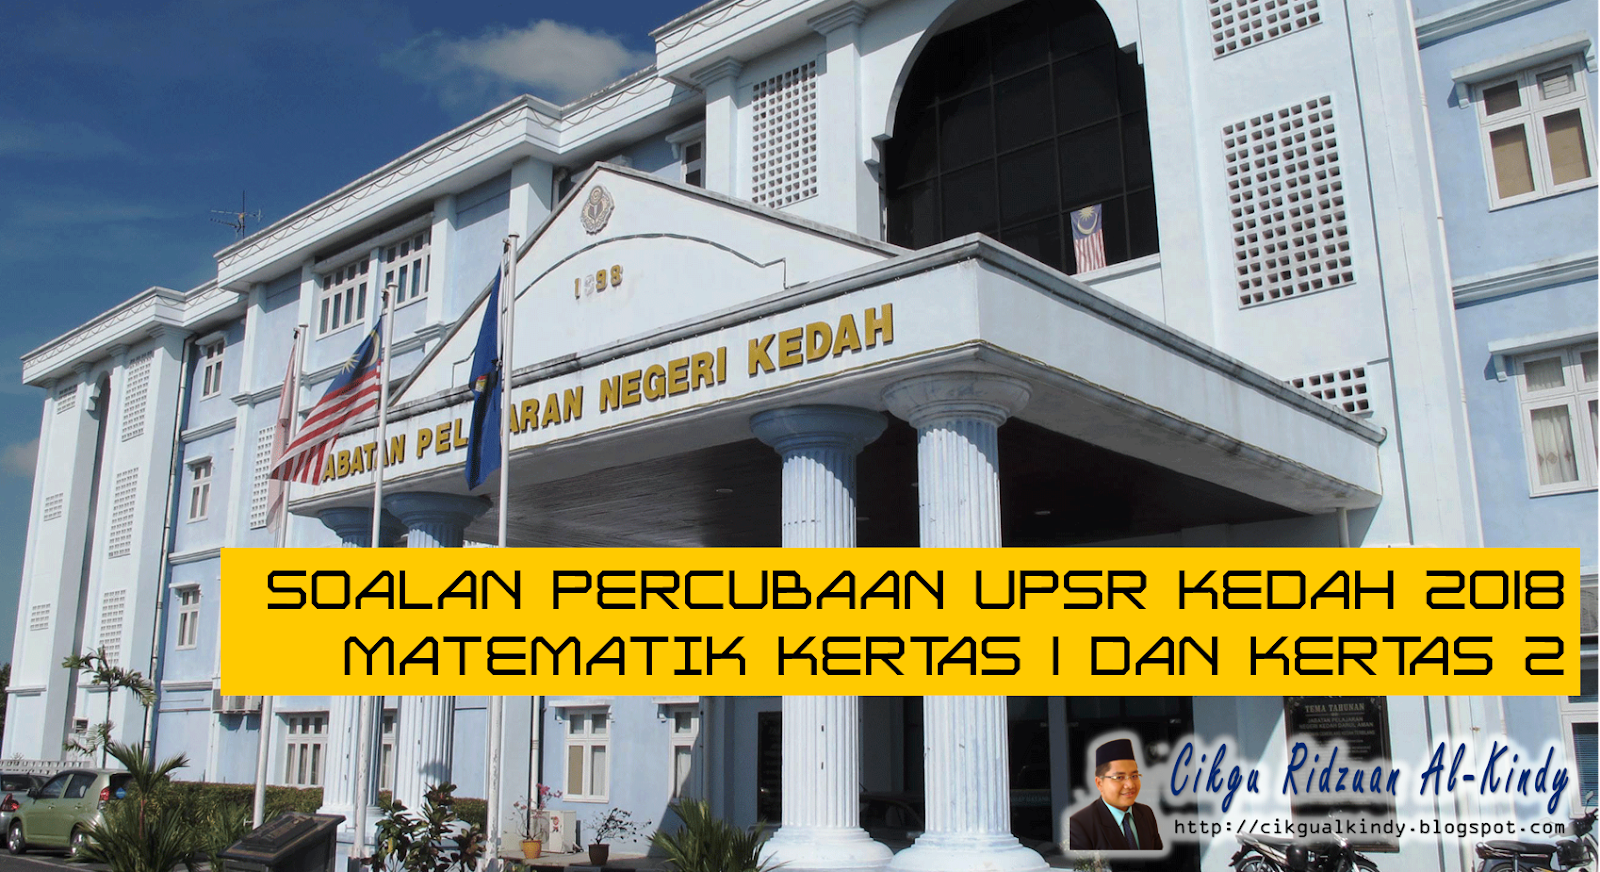 Soalan Percubaan UPSR Negeri Kedah 2018 - 015/1 dan 015/2